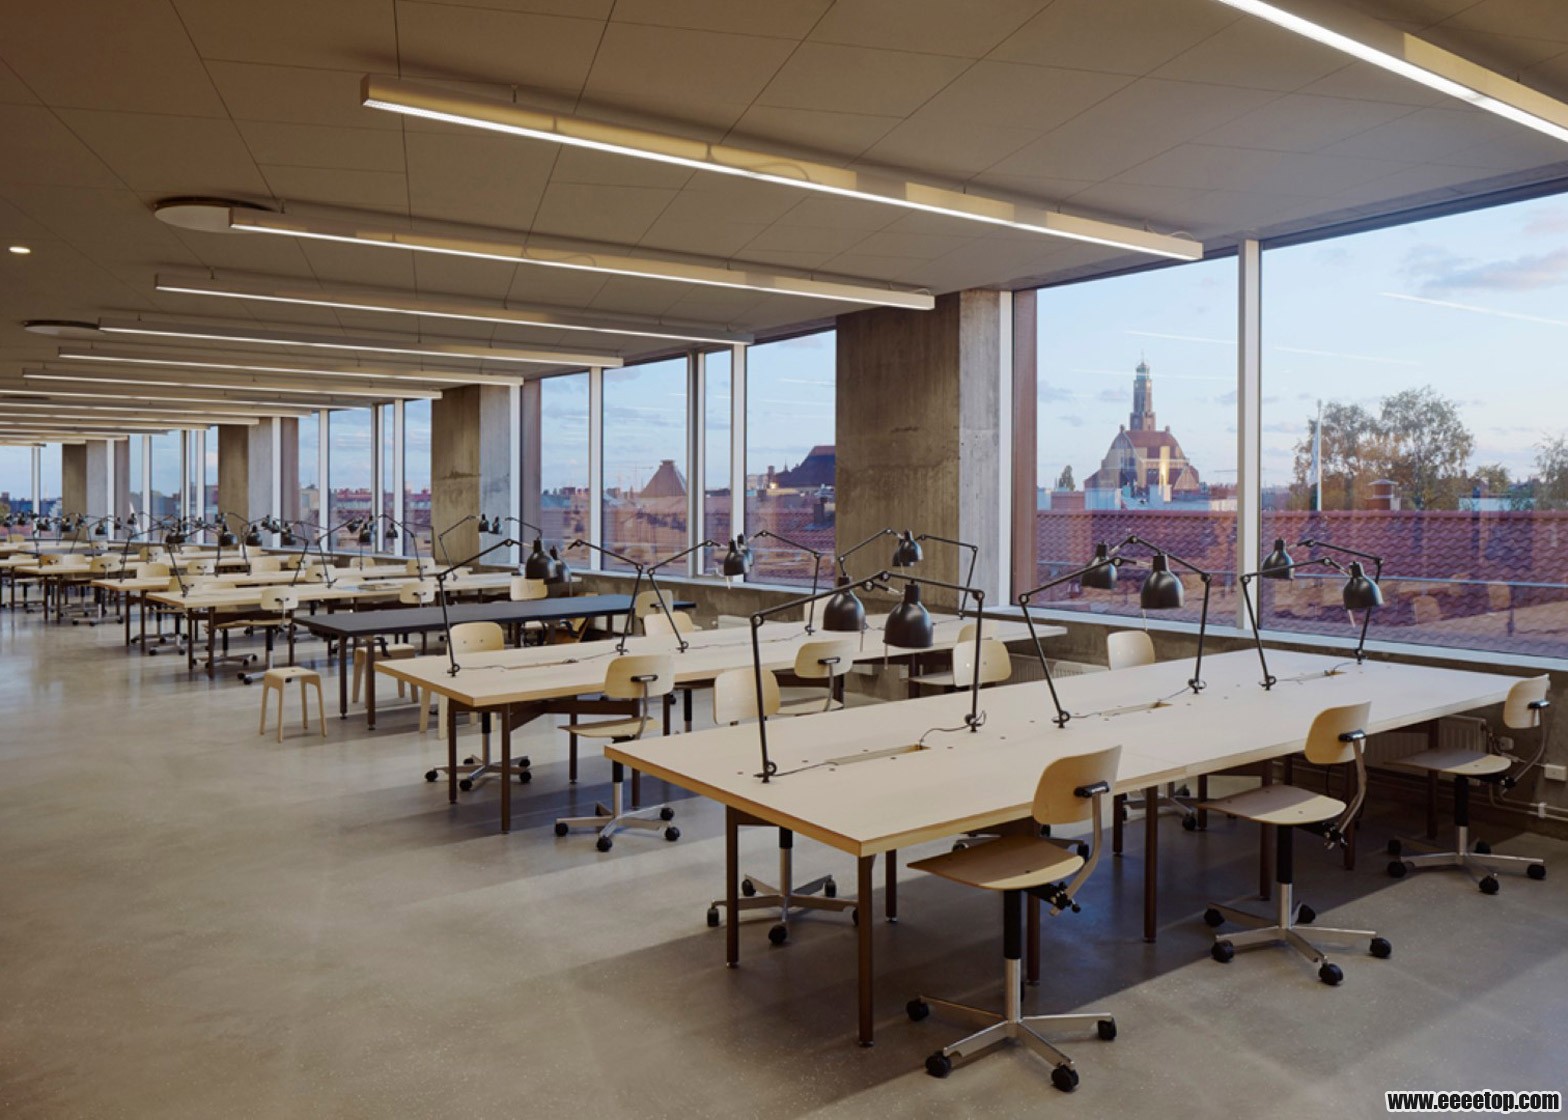 瑞典:斯德哥尔摩皇家理工学院,看看别人家的建